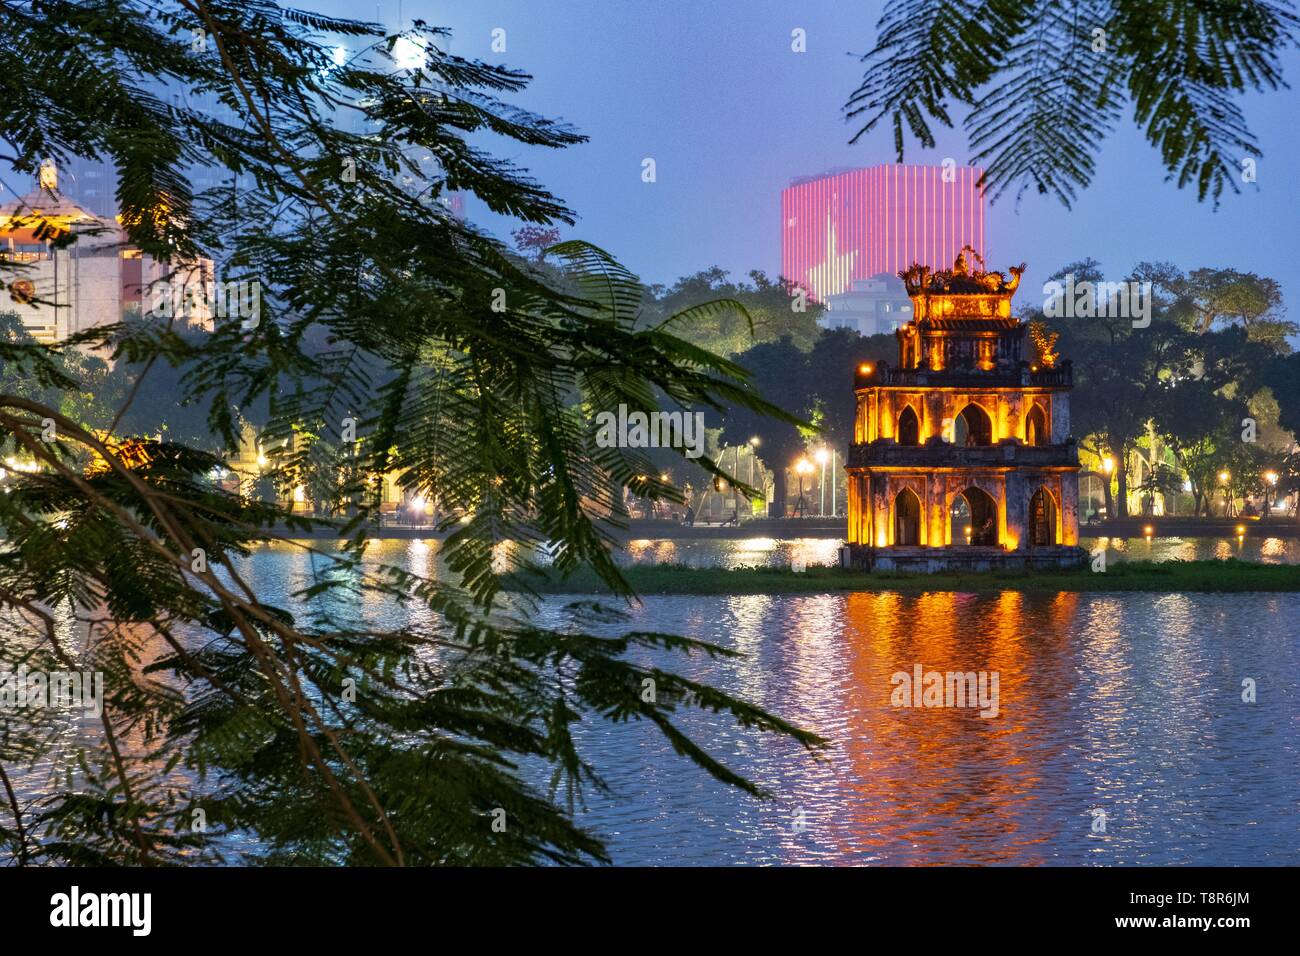 Vietnam, Hanoi, la vieille ville, le pont de Huc sur le lac Hoan Kiem (lac de l'Epée restituée) et la pagode Ngoc Son (temple de la montagne de jade) Banque D'Images